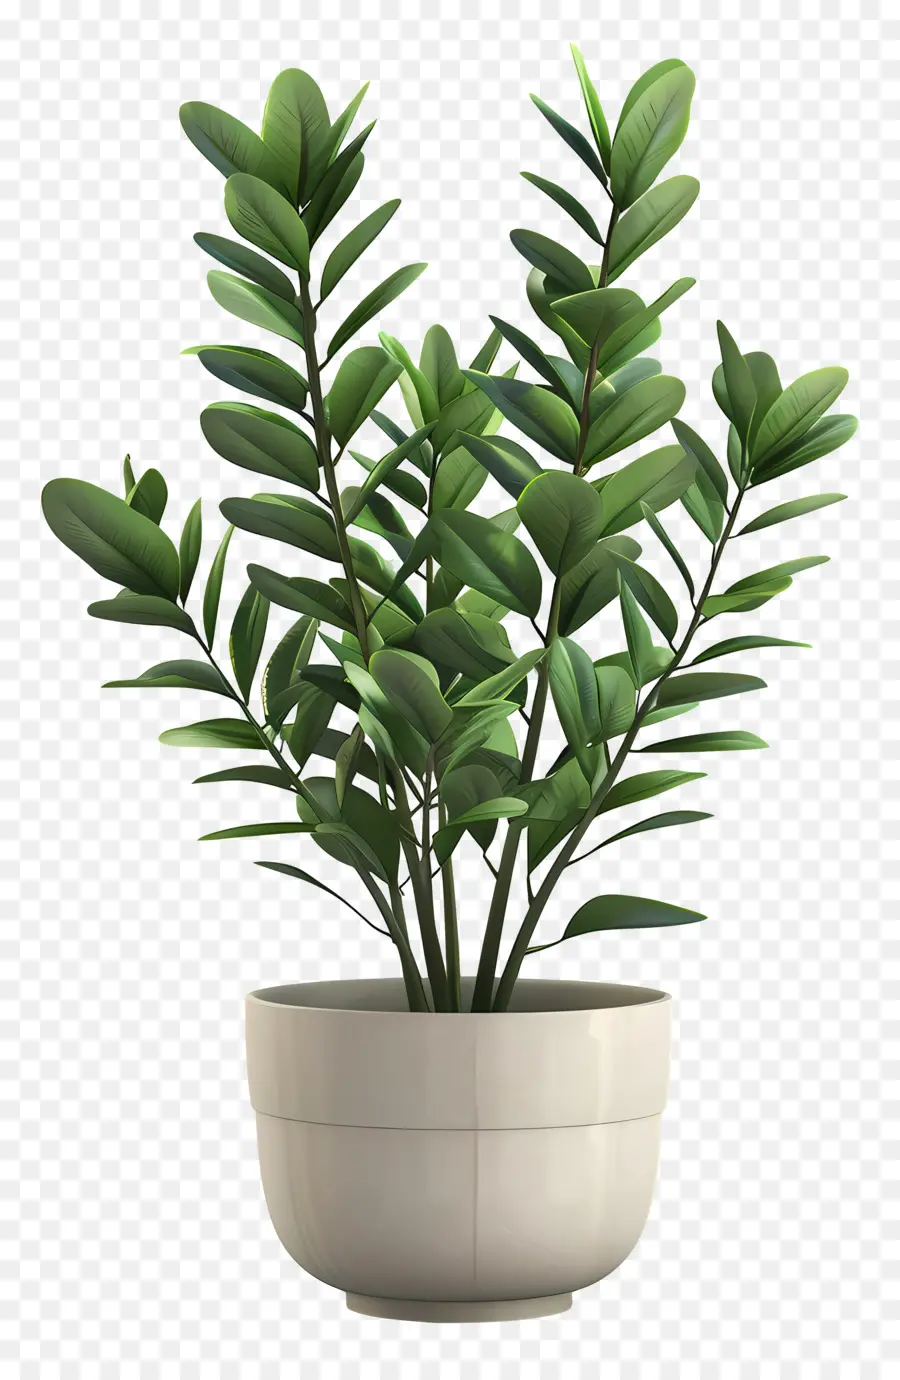 ZZ Pflanze Innenpflanzen pflanzte Pflanze grüne Blätter bewässerte Pflanze - Kleine grüne Pflanze im Topf, frisch bewässert